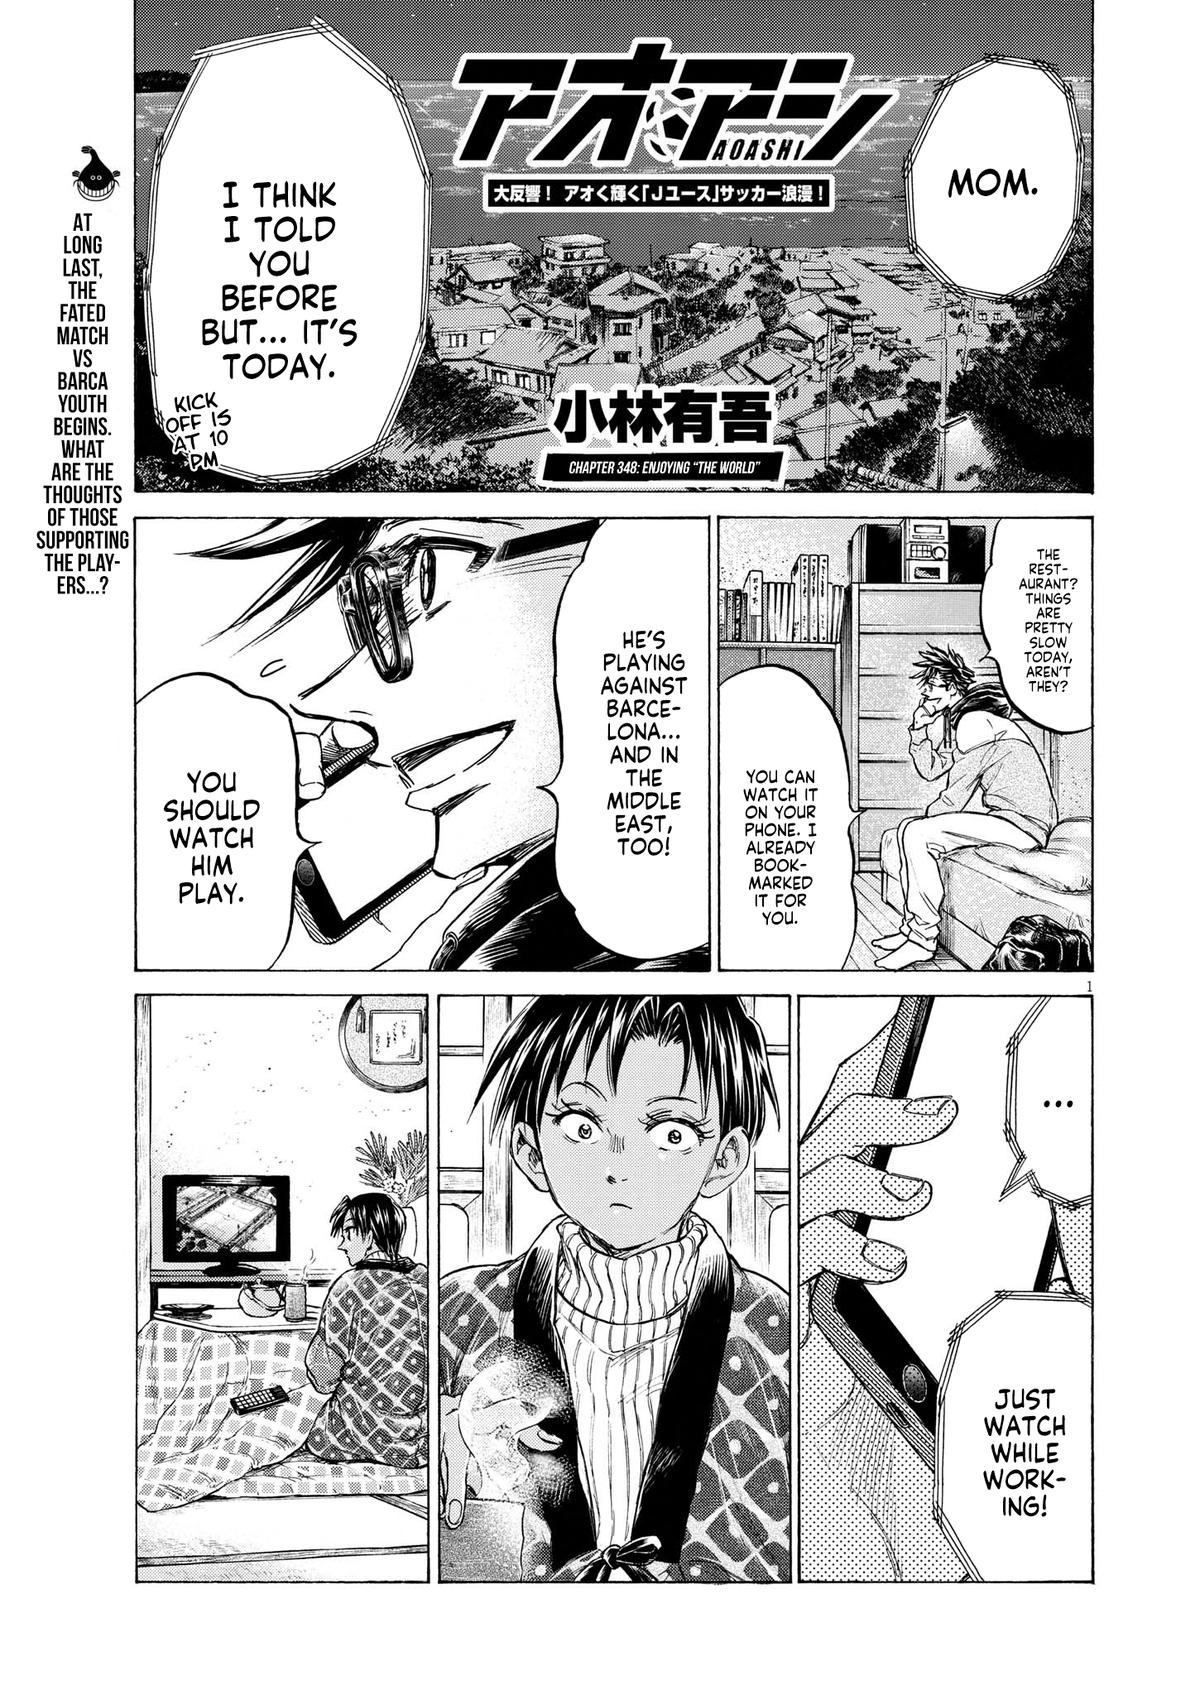 Ao Ashi, Chapter 252 - Ao Ashi Manga Online